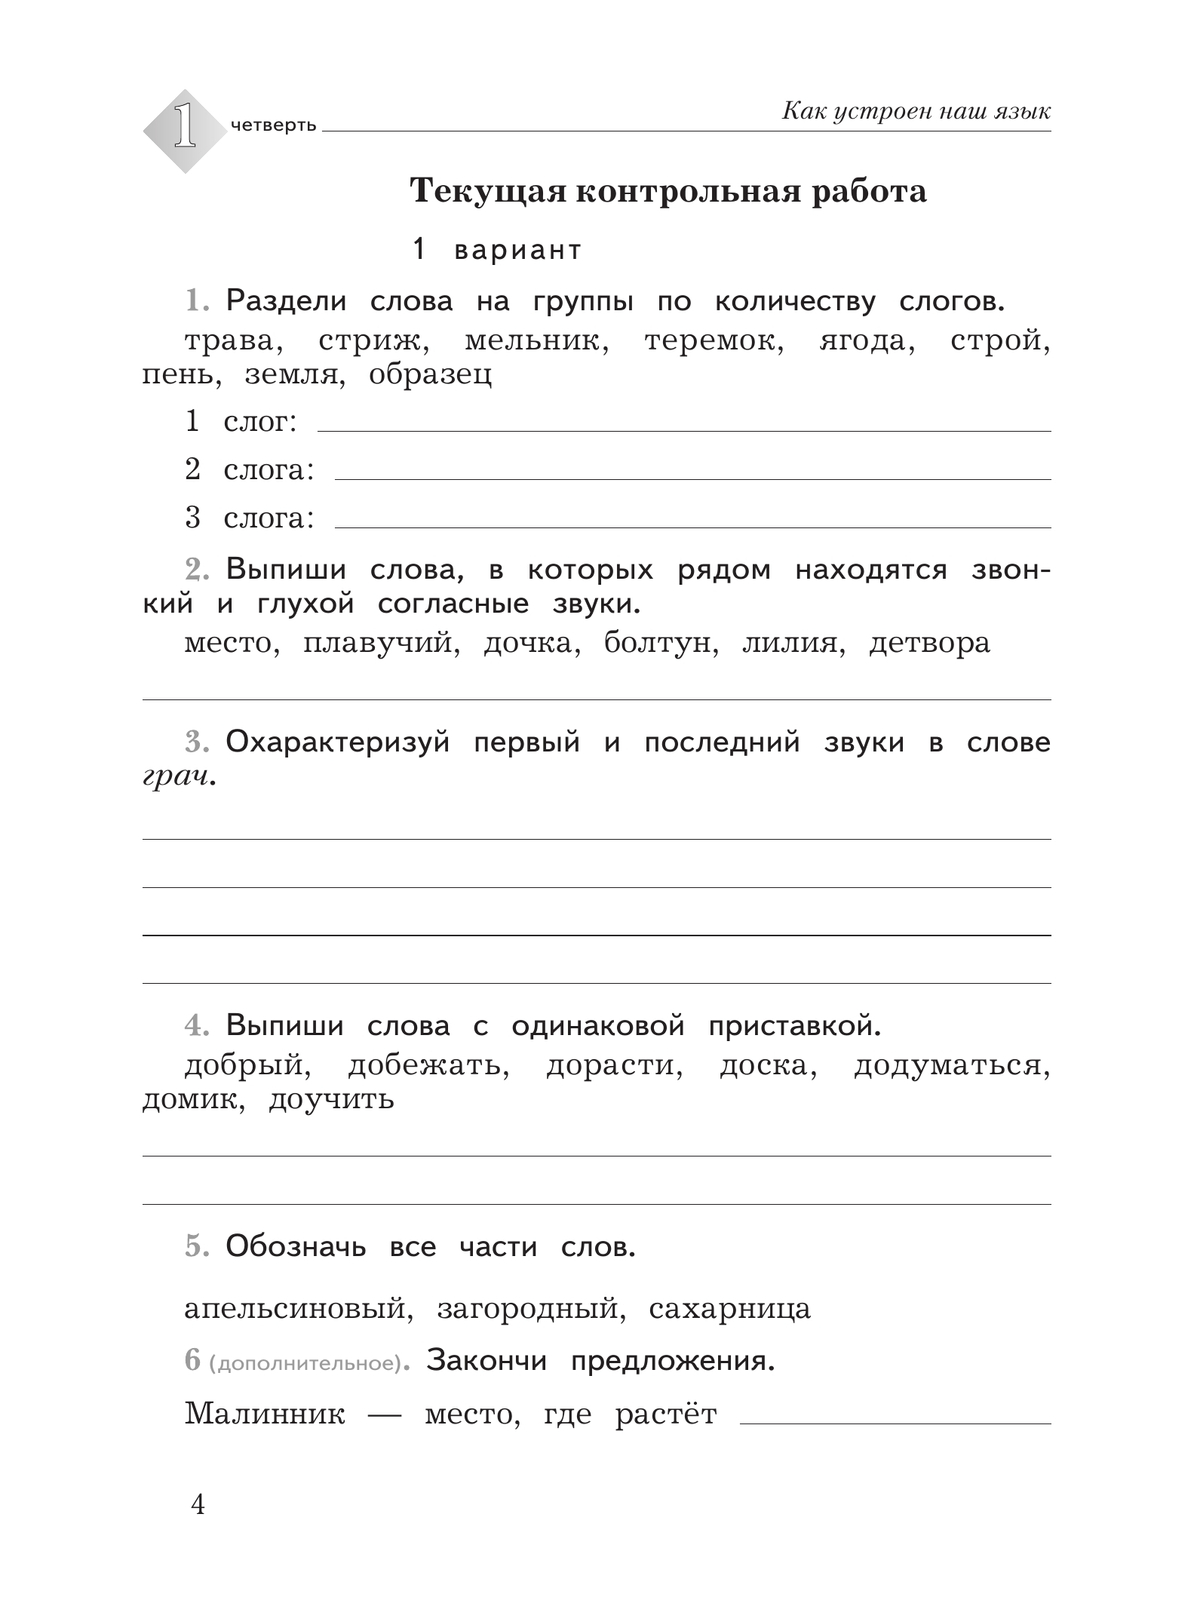 Русский язык. 3 класс. Тетрадь для контрольных работ 2